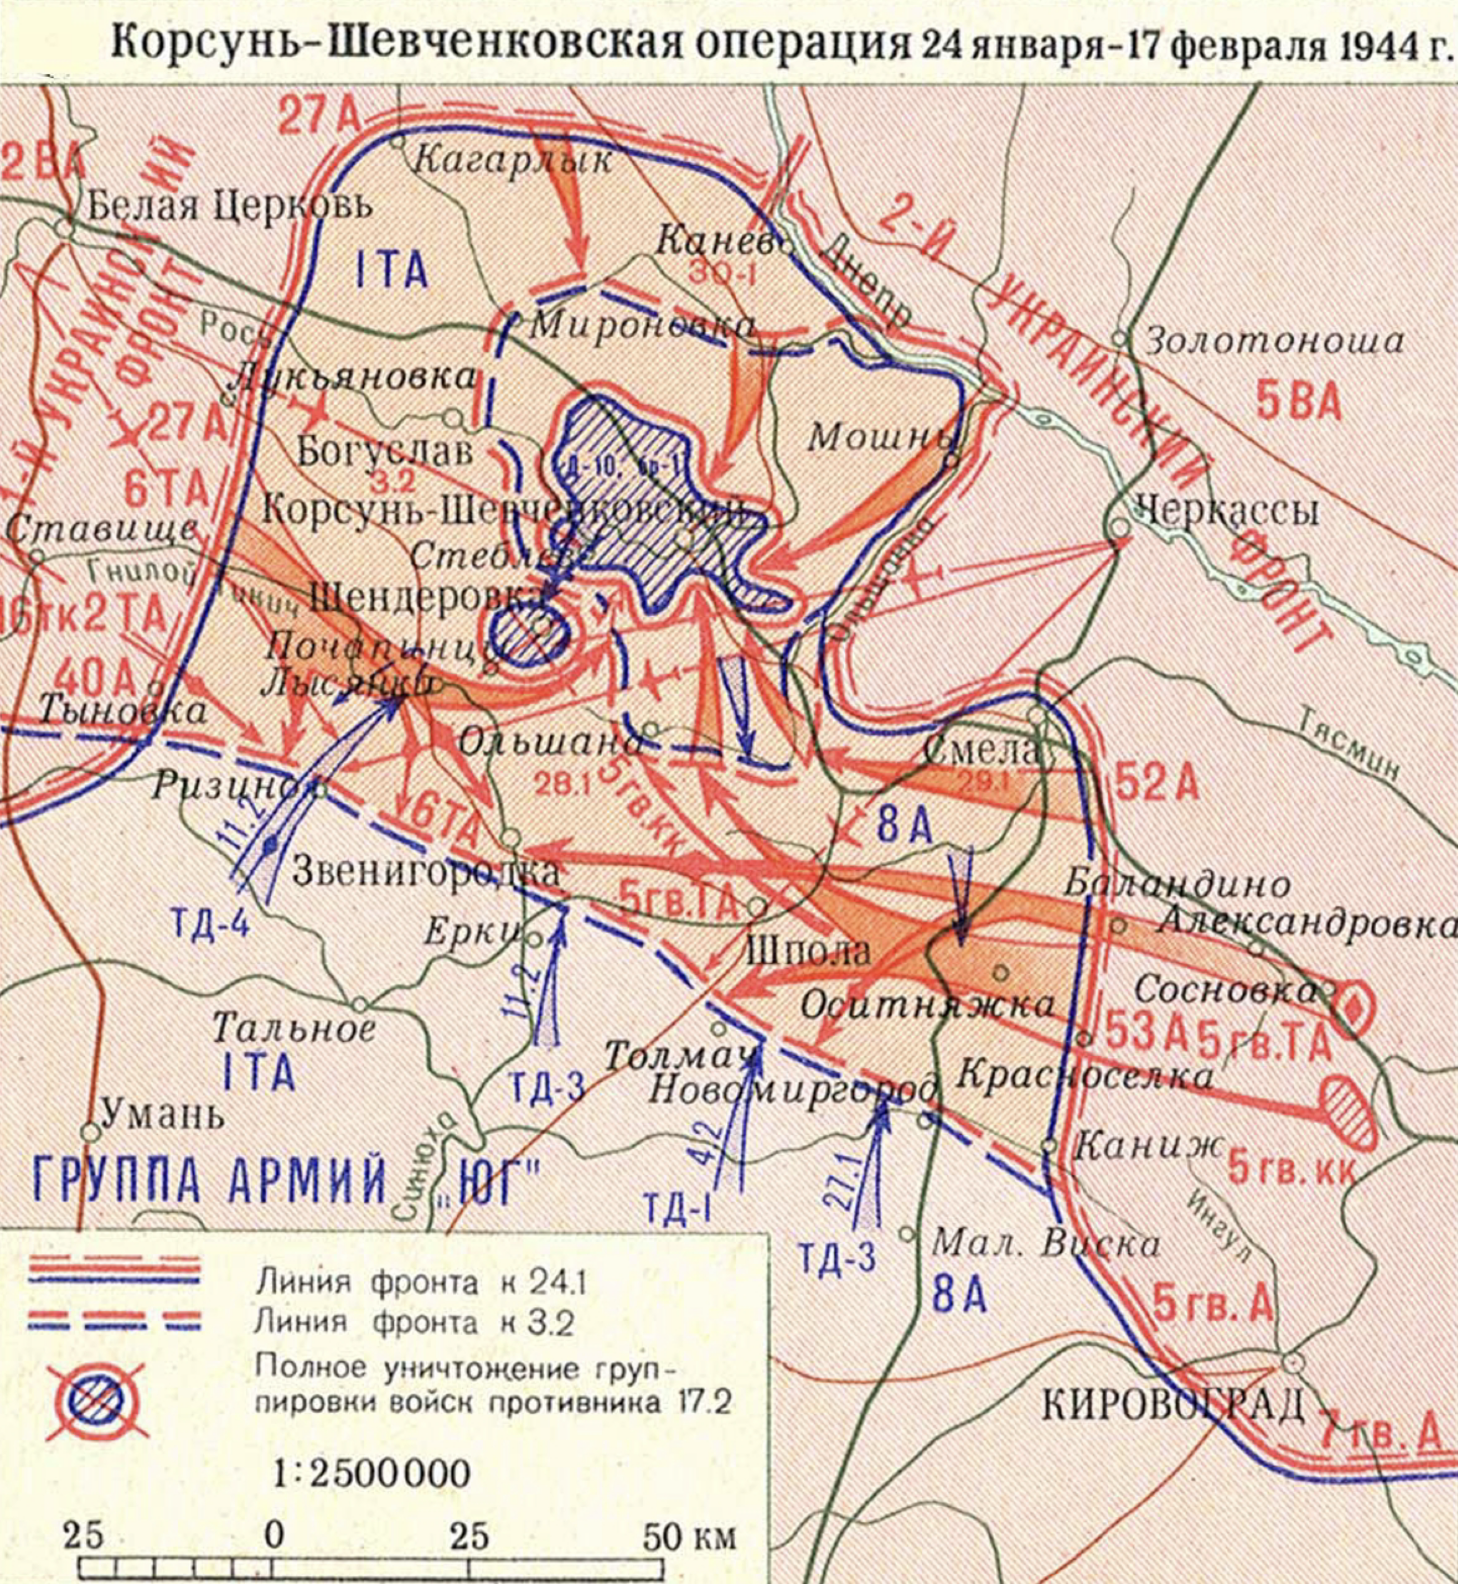 Карта Корсунь-Шевченковской наступательной операции с охватом немецких войск на образовавшемся выступе